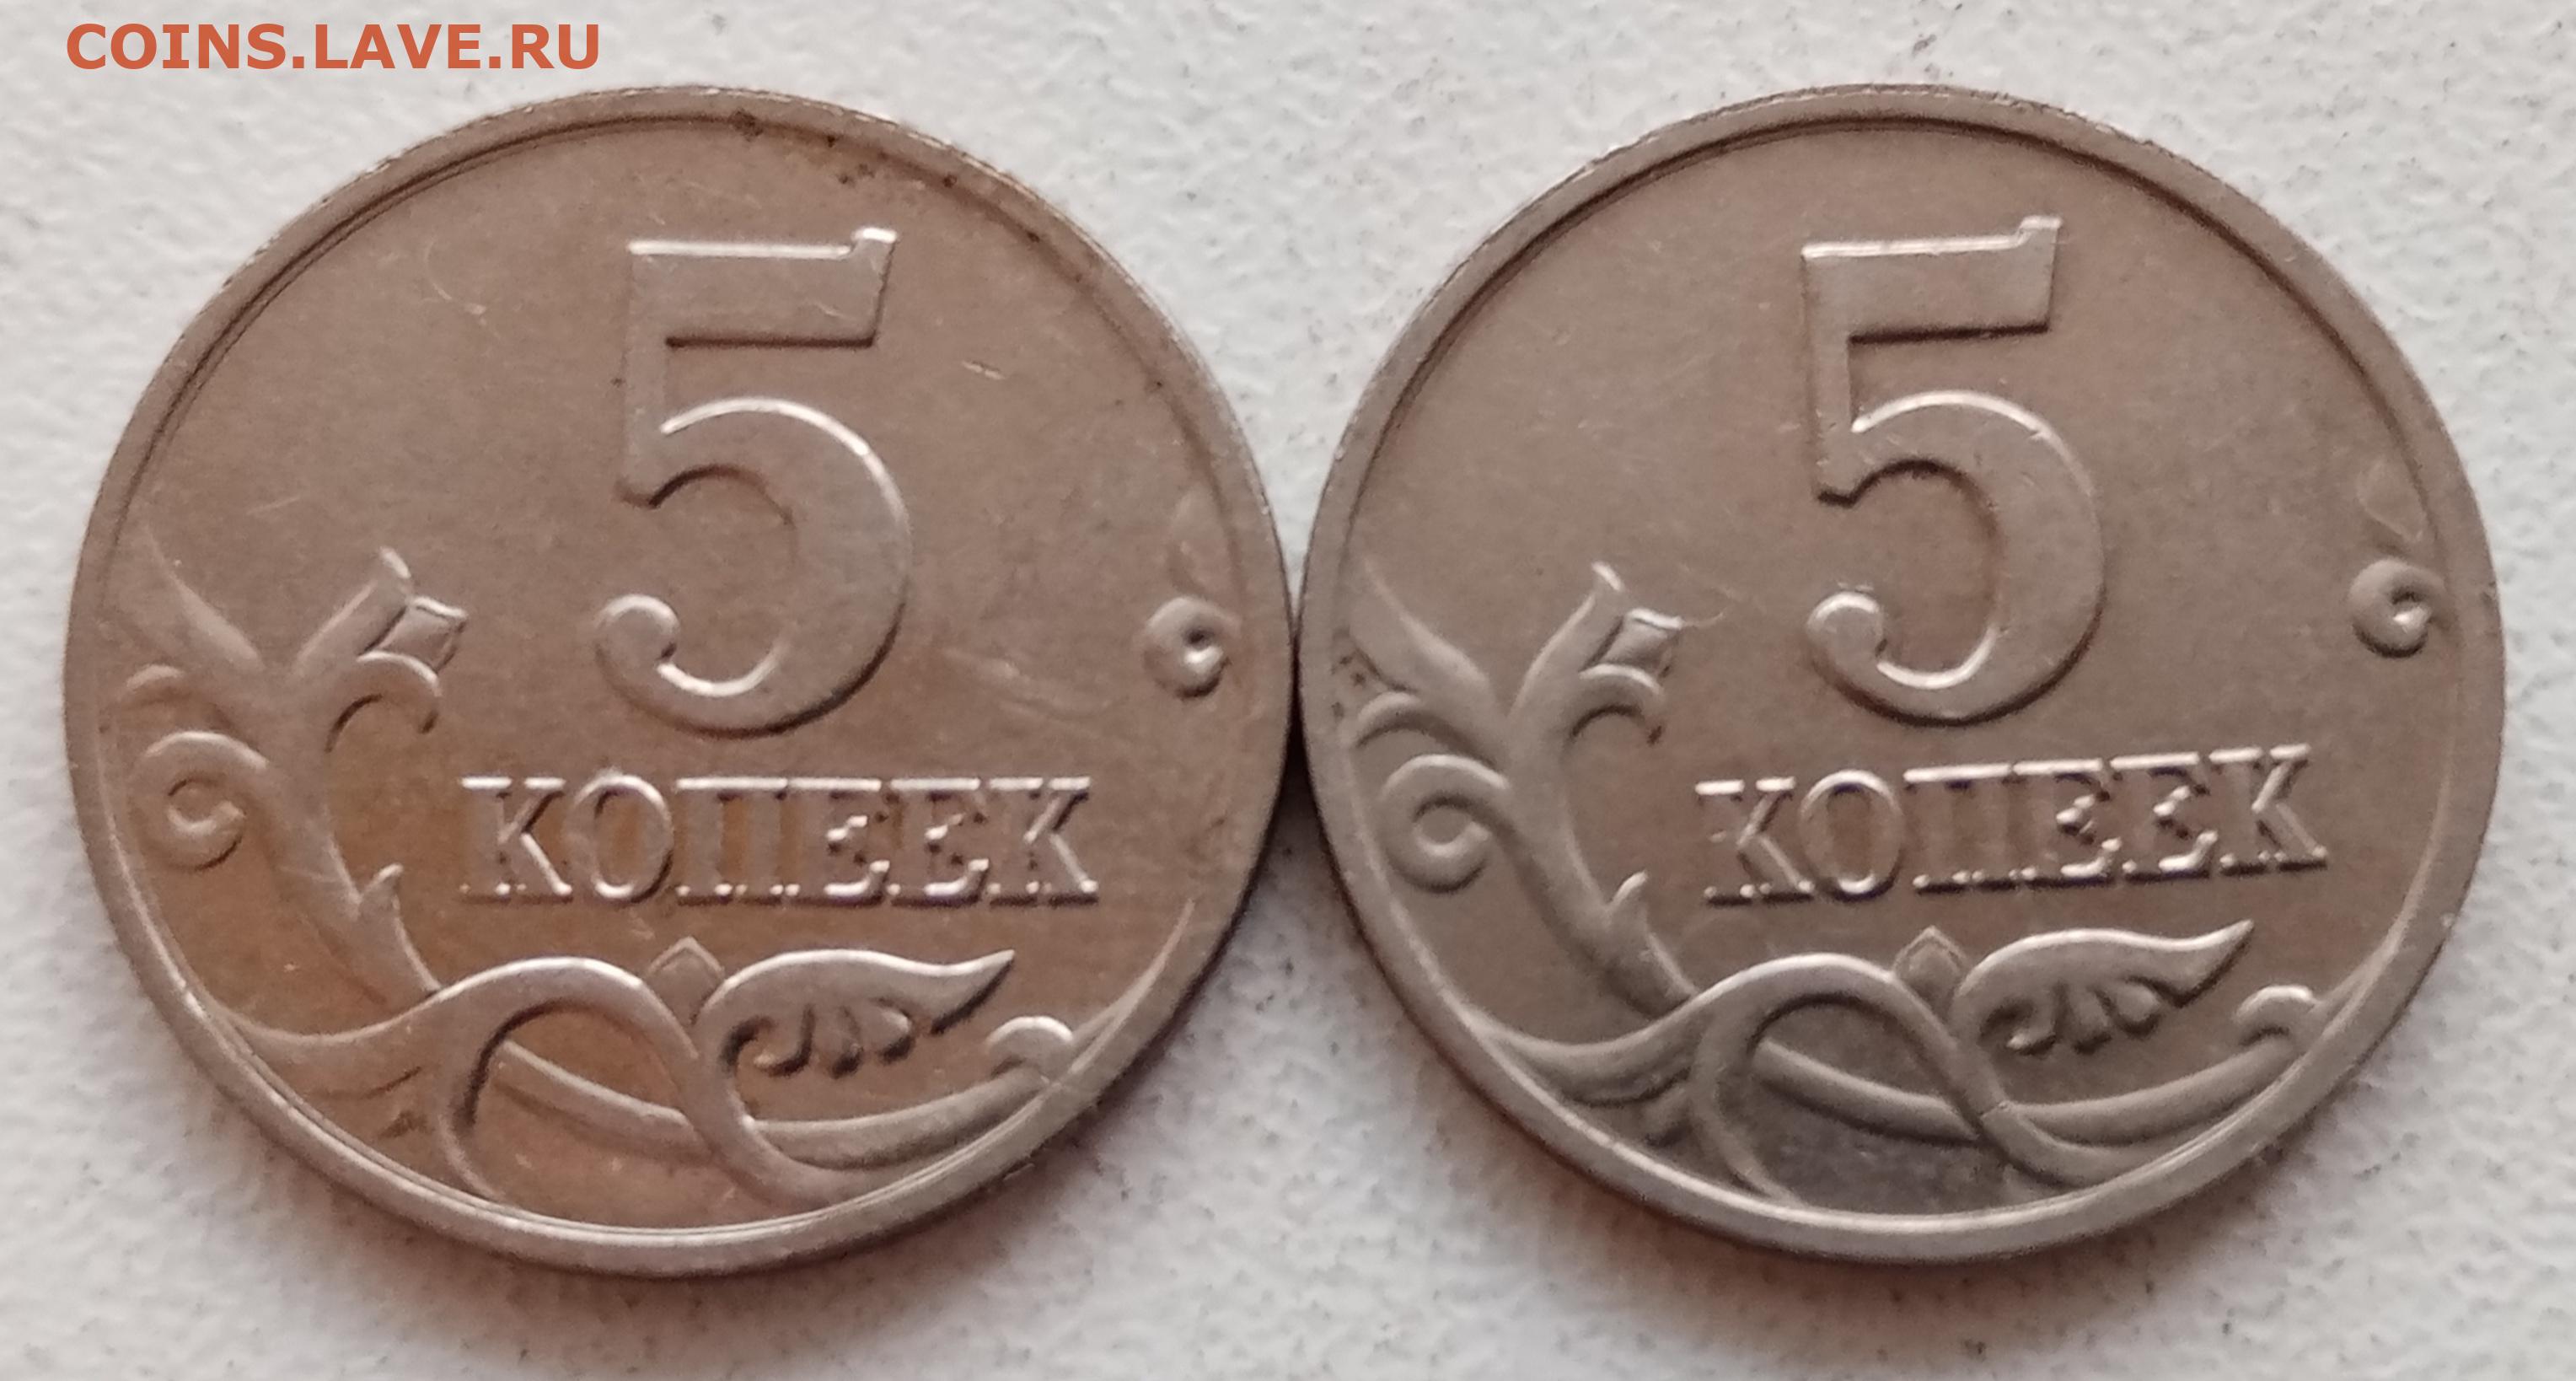 Монеты 2001 года цена стоимость монеты. Монета 5 копеек 2002 СП. 1 Копейка 2001. Копейка 2001 года. 5 Копеек 2001 СП.